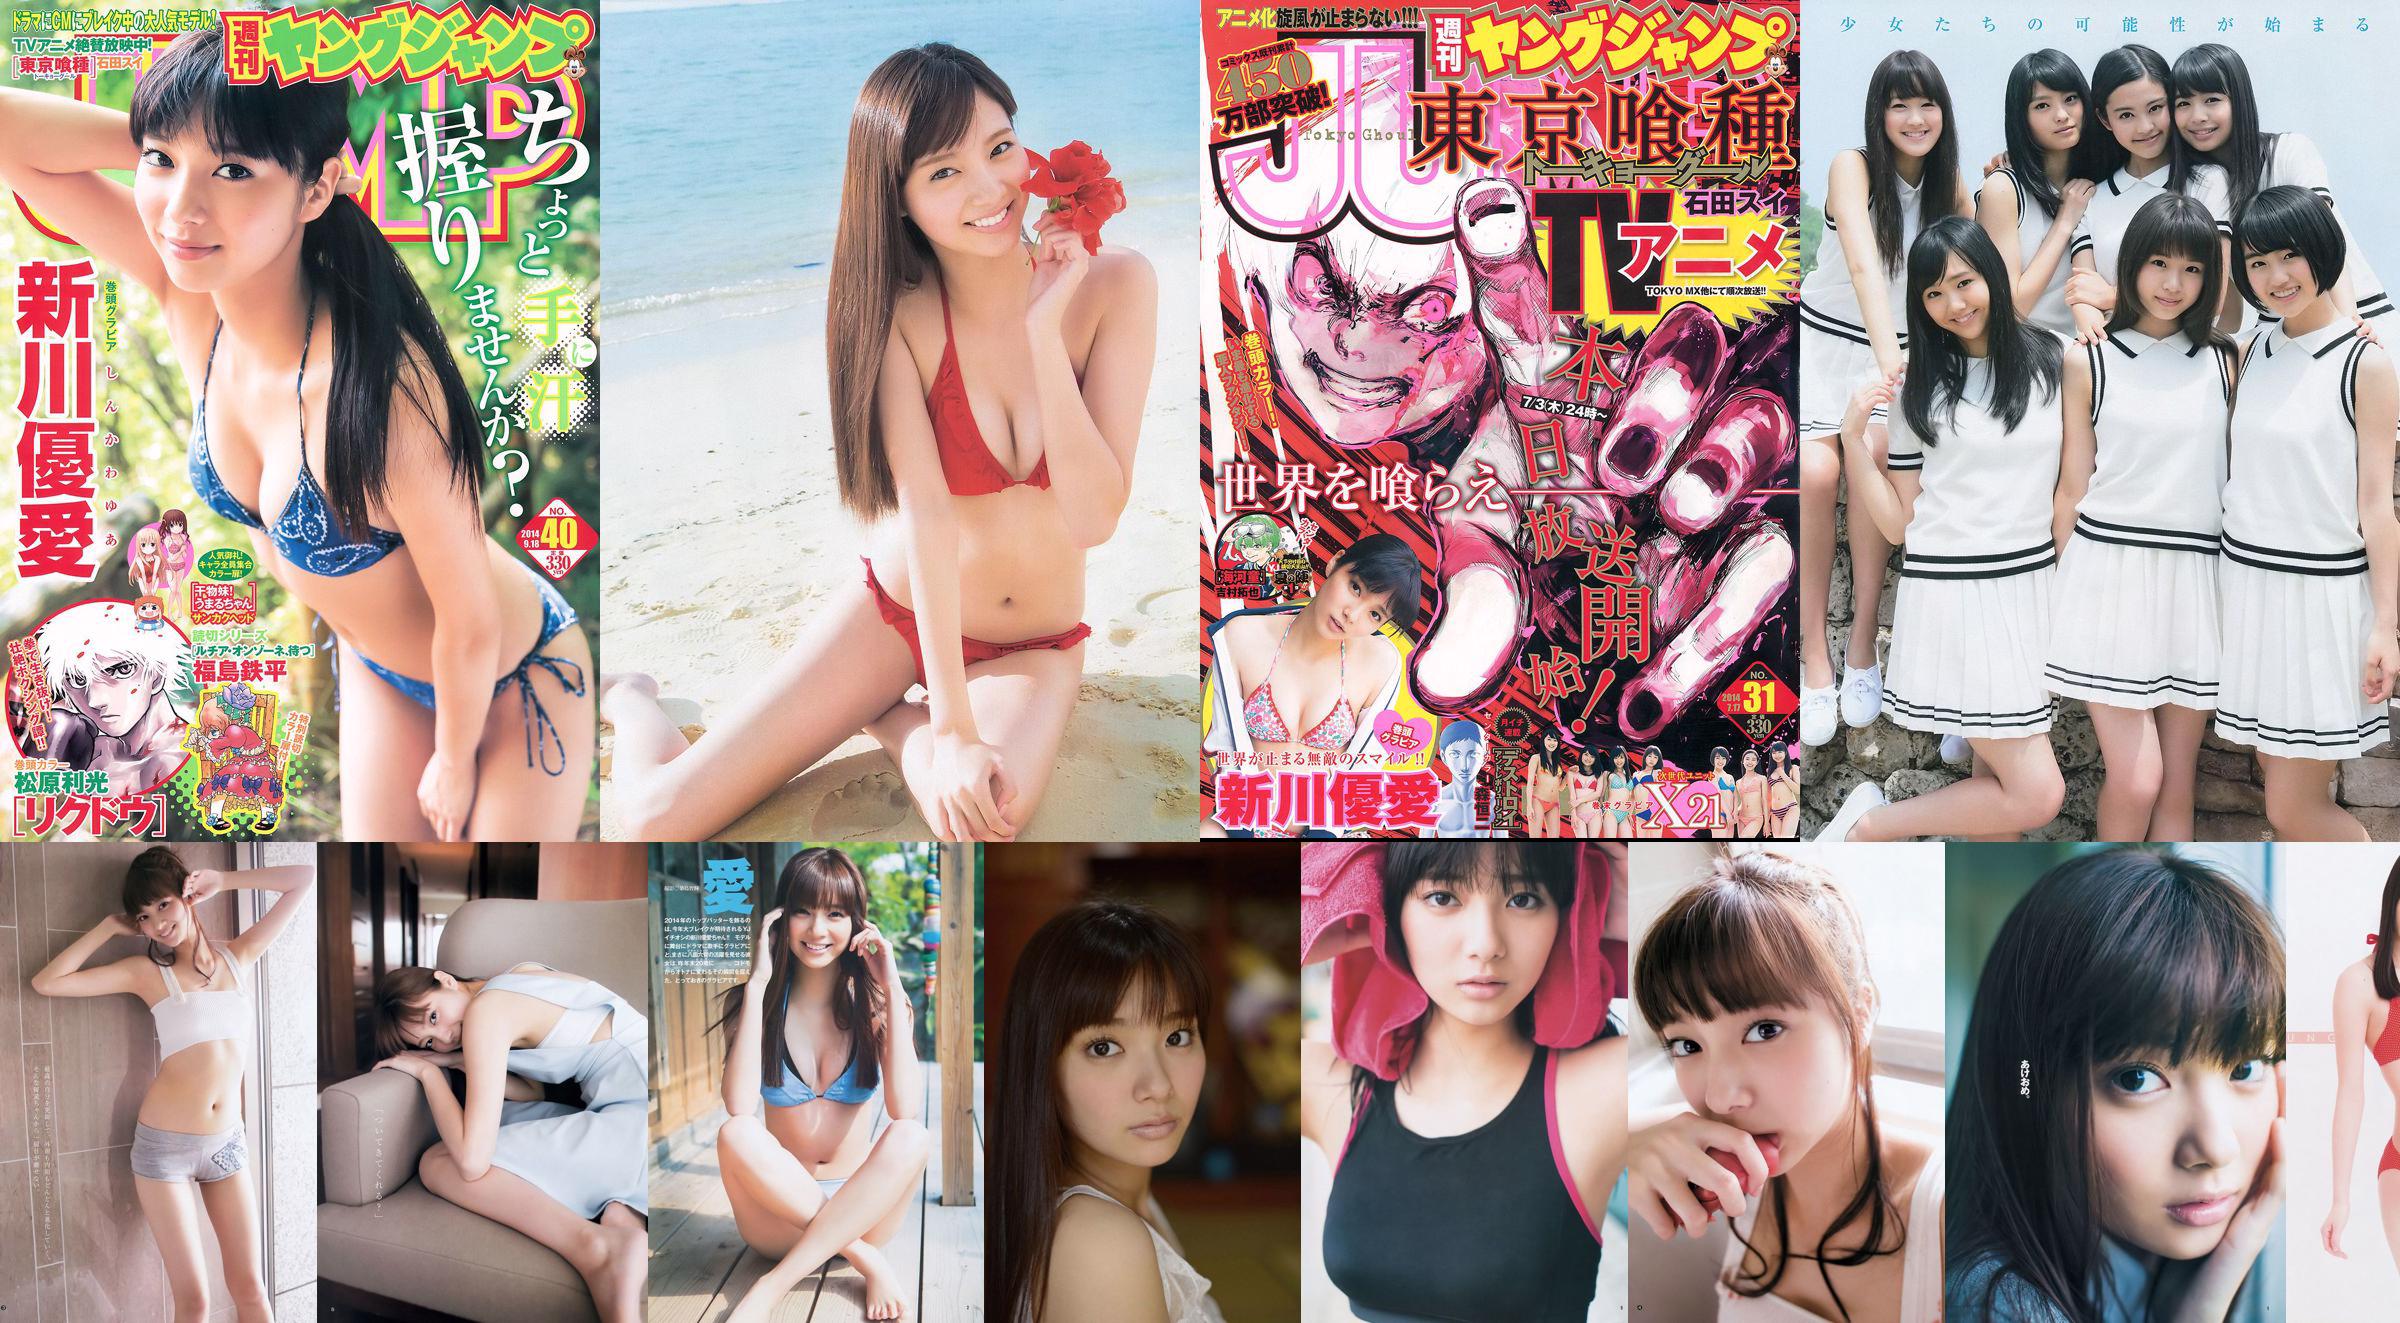 Yua Shinkawa X21 [Wekelijkse Young Jump] 2014 No.31 Photo Magazine No.a75624 Pagina 1